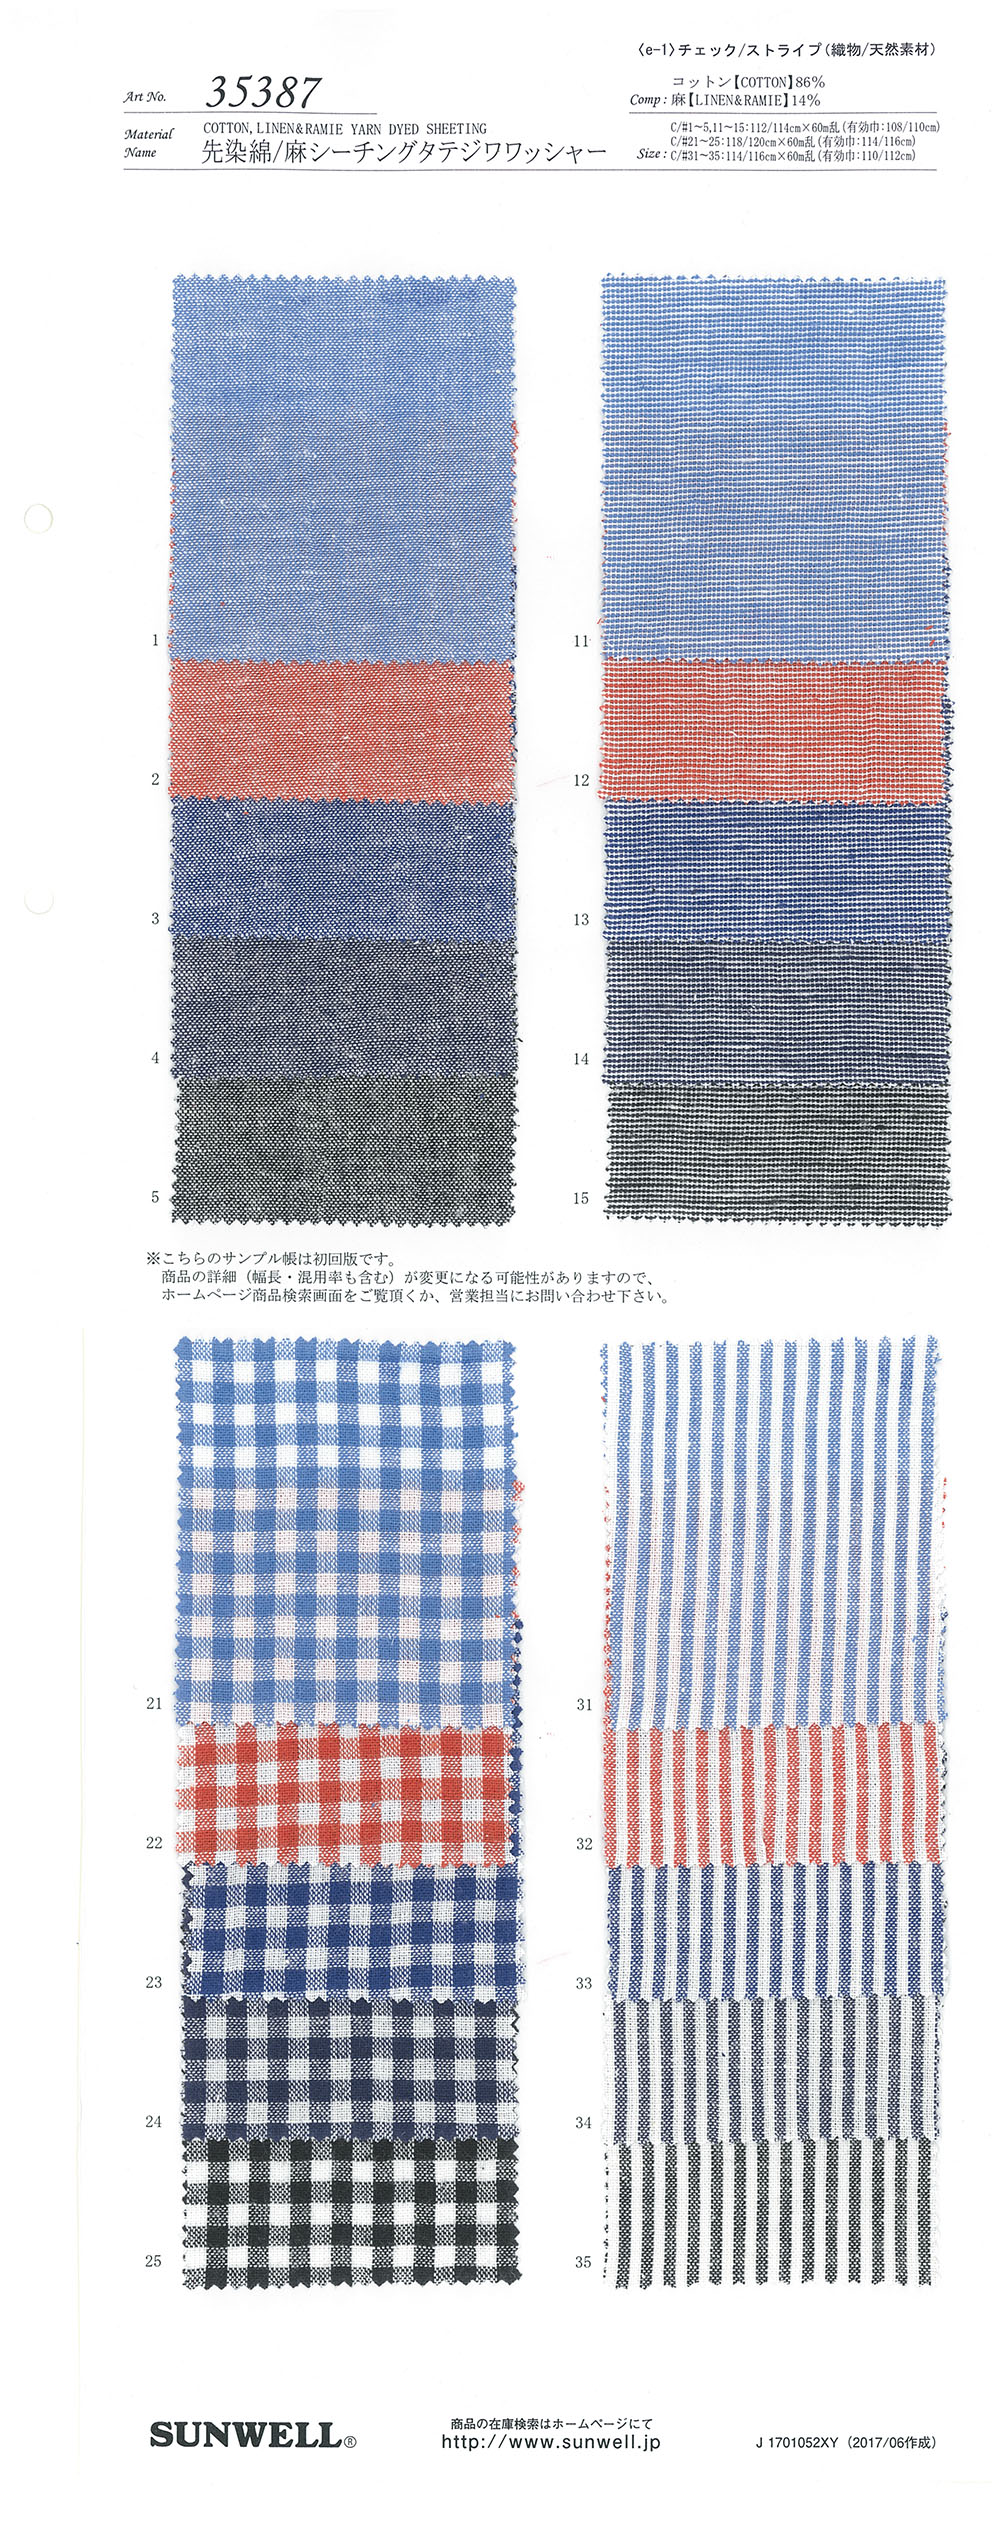 35387 色织麻坯布立水洗加工[面料] SUNWELL